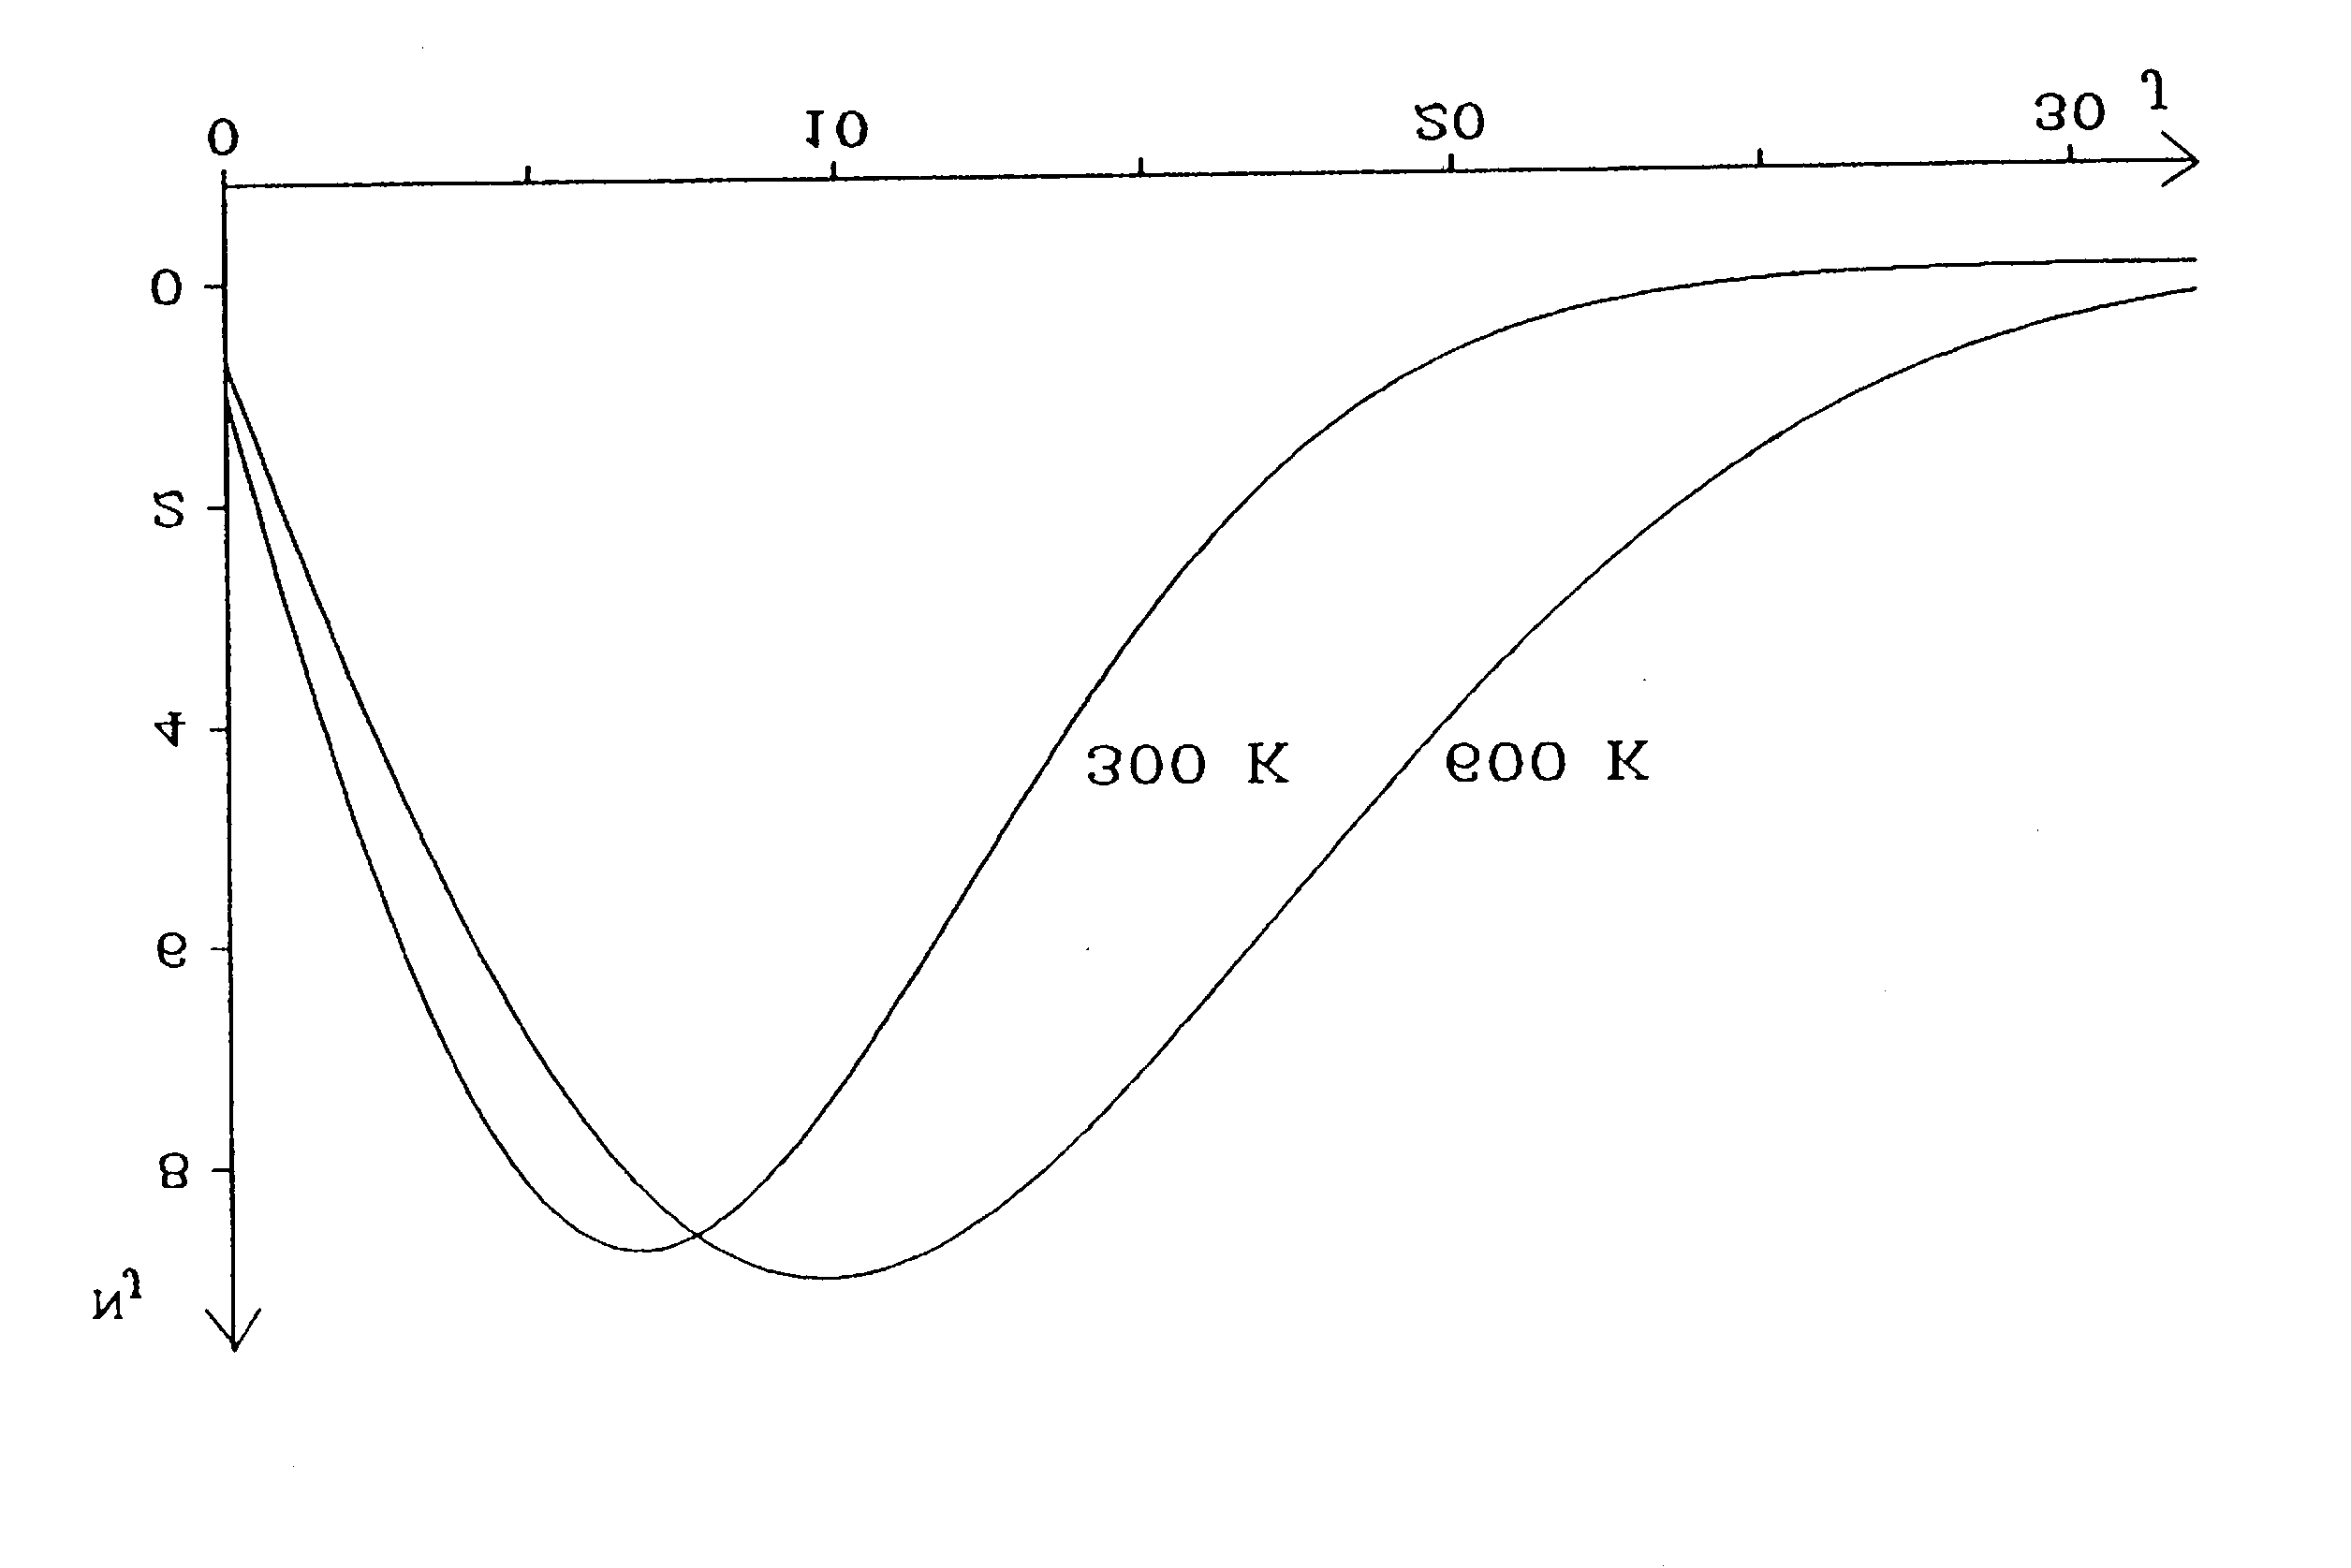 A rotáció ávok intenzitáát az egye (aló) energiazintek populációja határozza meg, mely a Maxwell-Boltzmann elozlát követi (2.11.